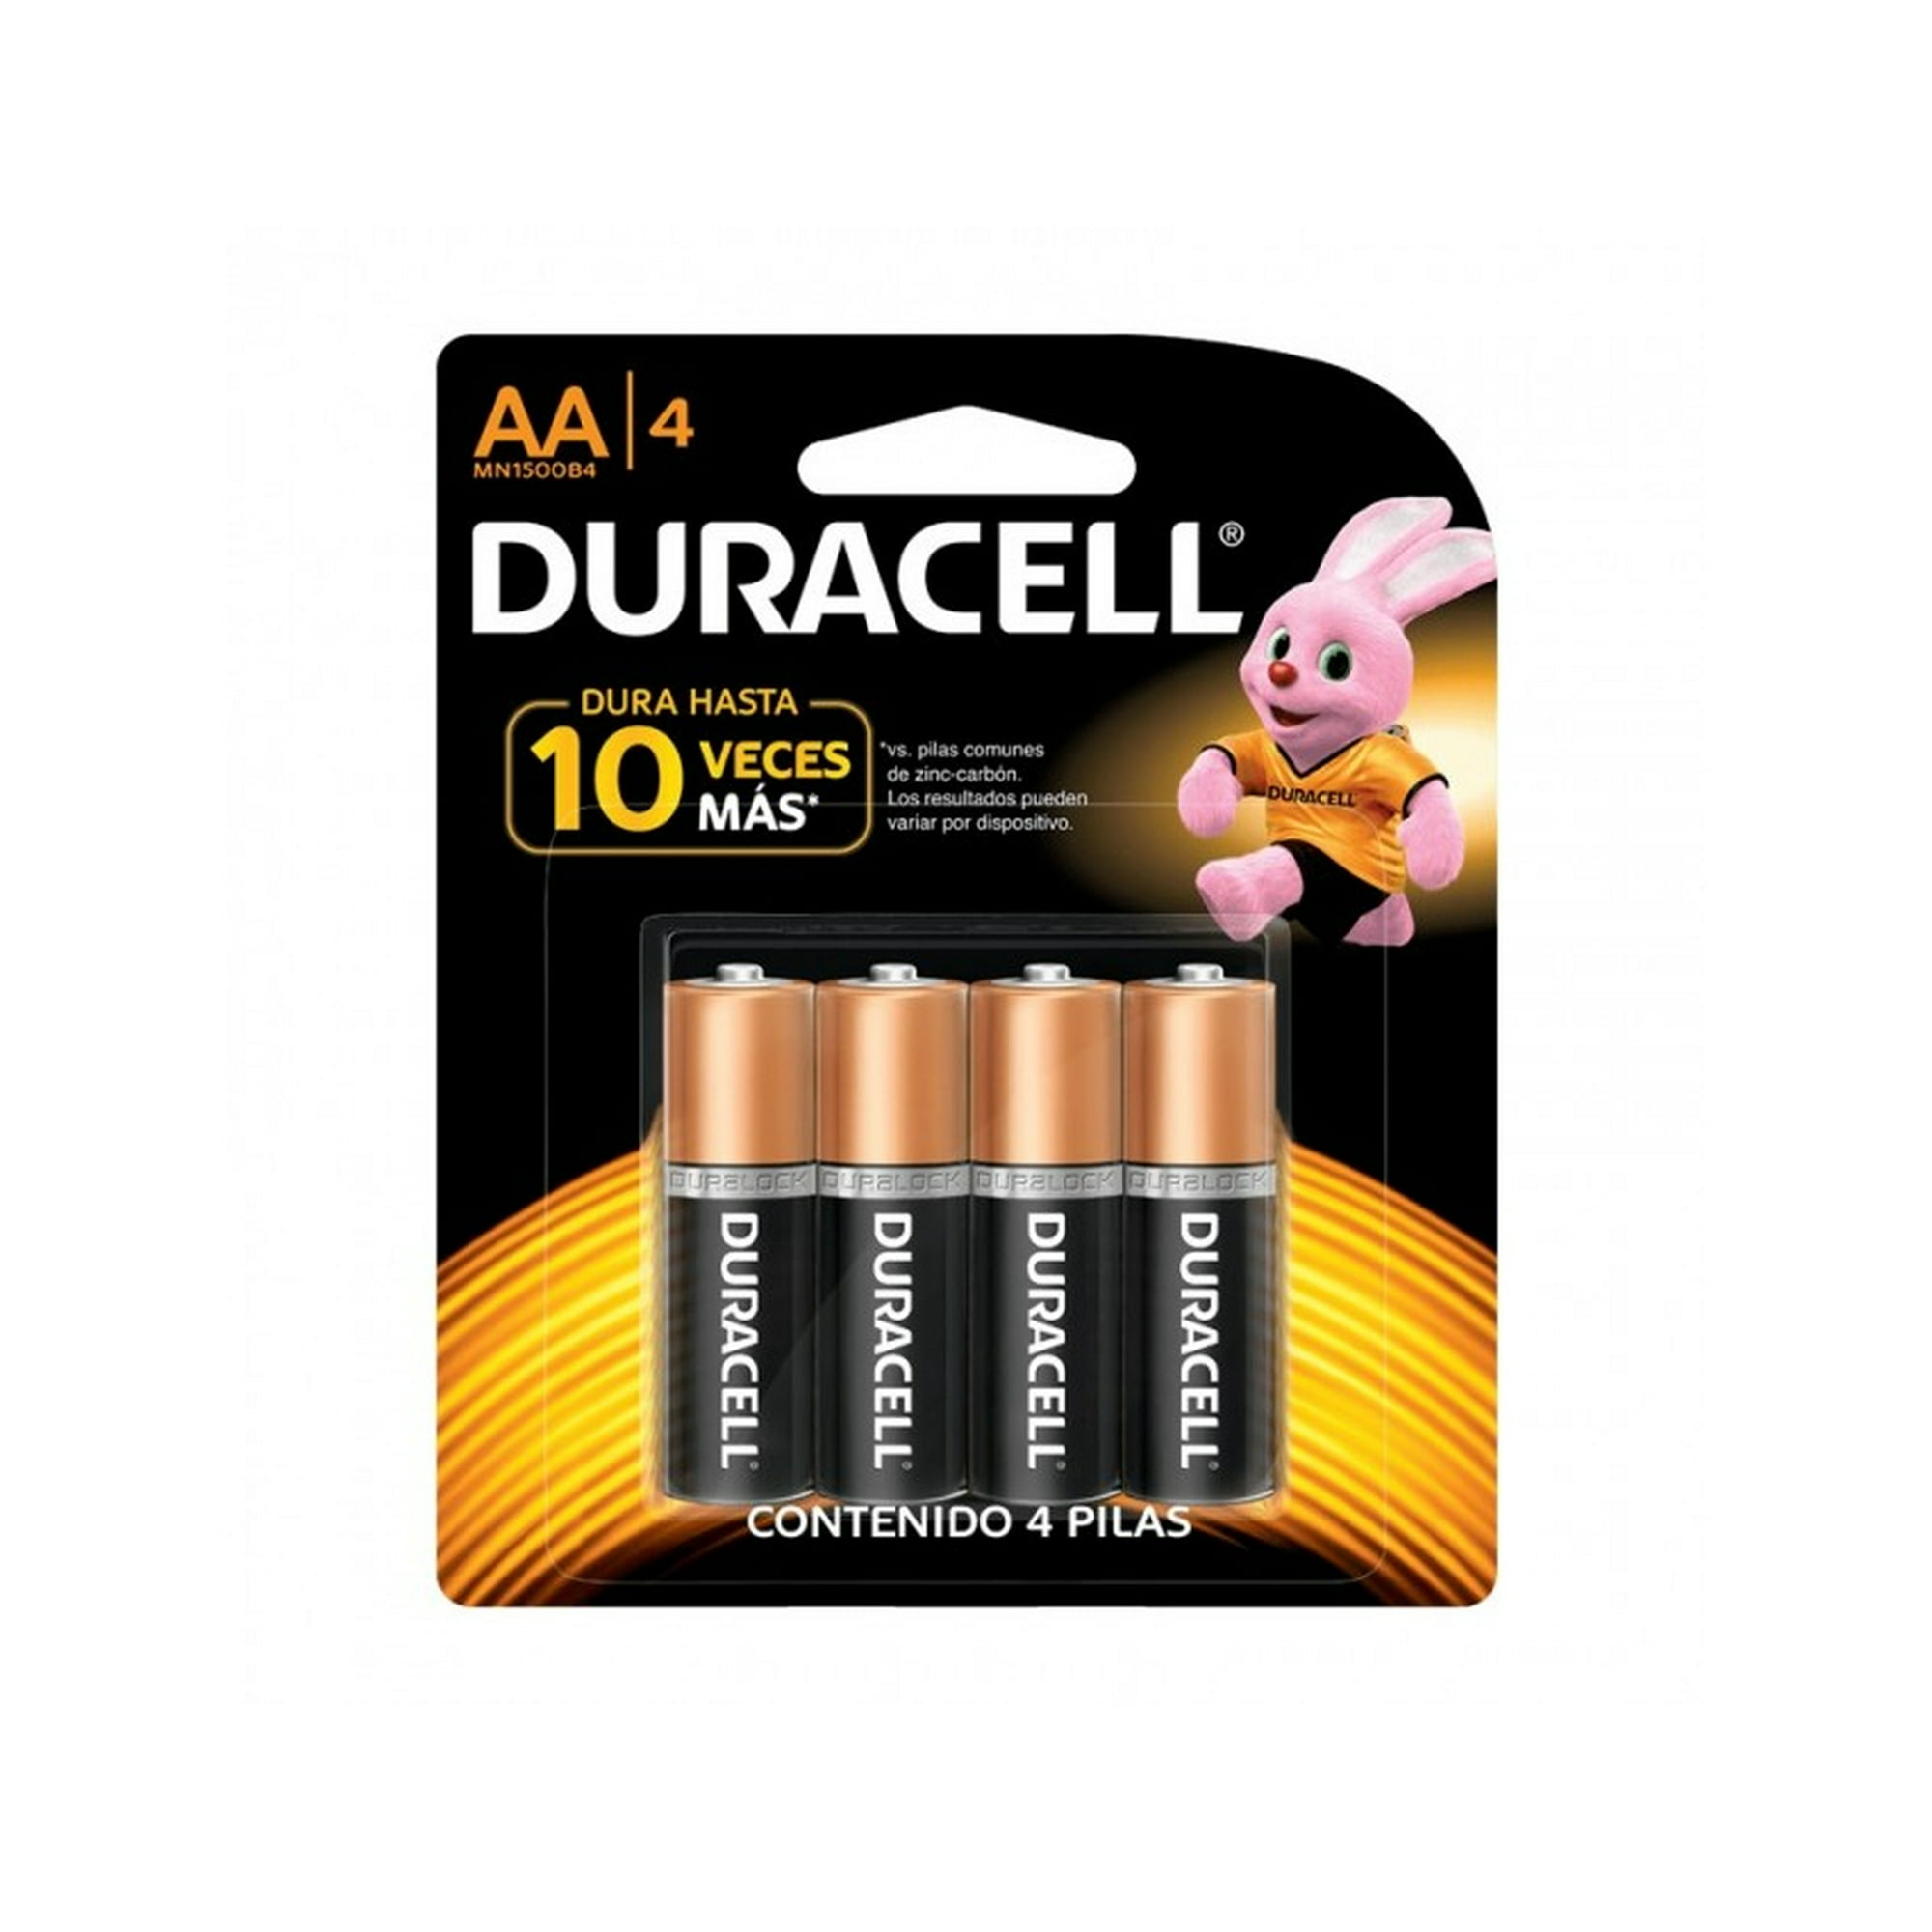 Cargador de pilas Duracell con 4 pilas AAA compatible con pilas AA